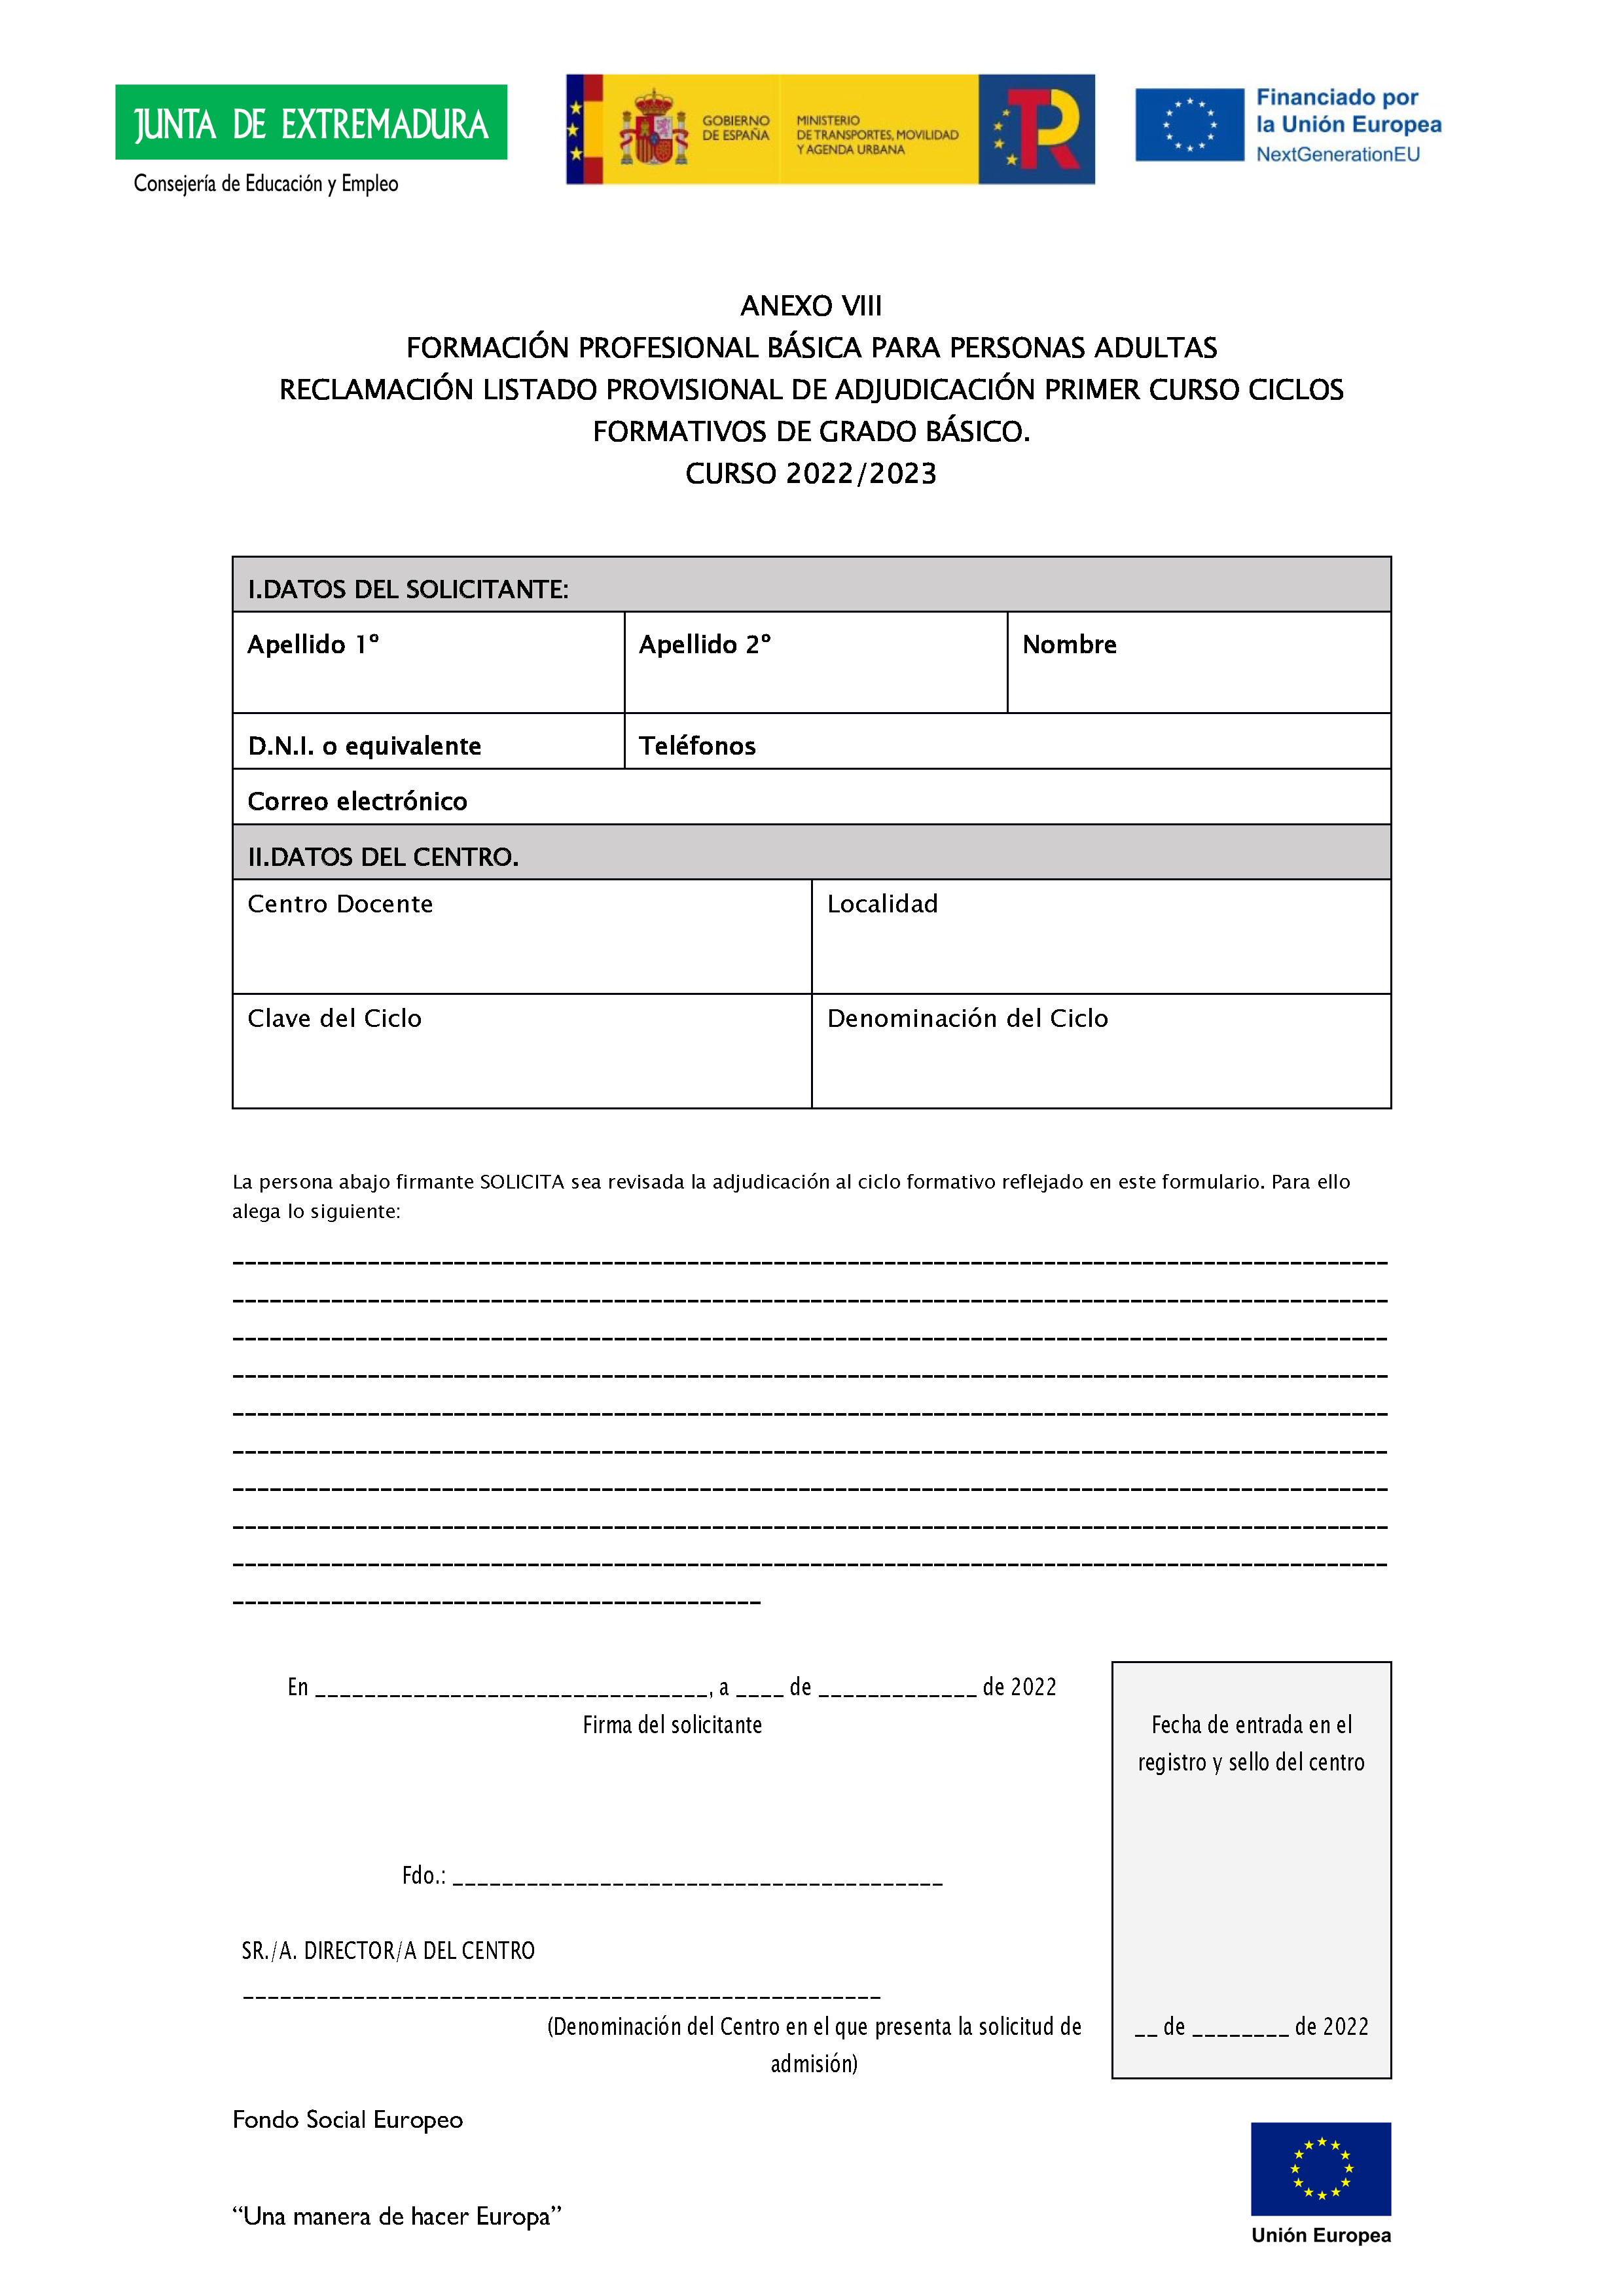 ANEXO IFORMACIÓN PROFESIONAL BÁSICA// CICLOS FORMATIVOS DE GRADO BÁSICO PARA PERSONAS ADULTAS Pag 11